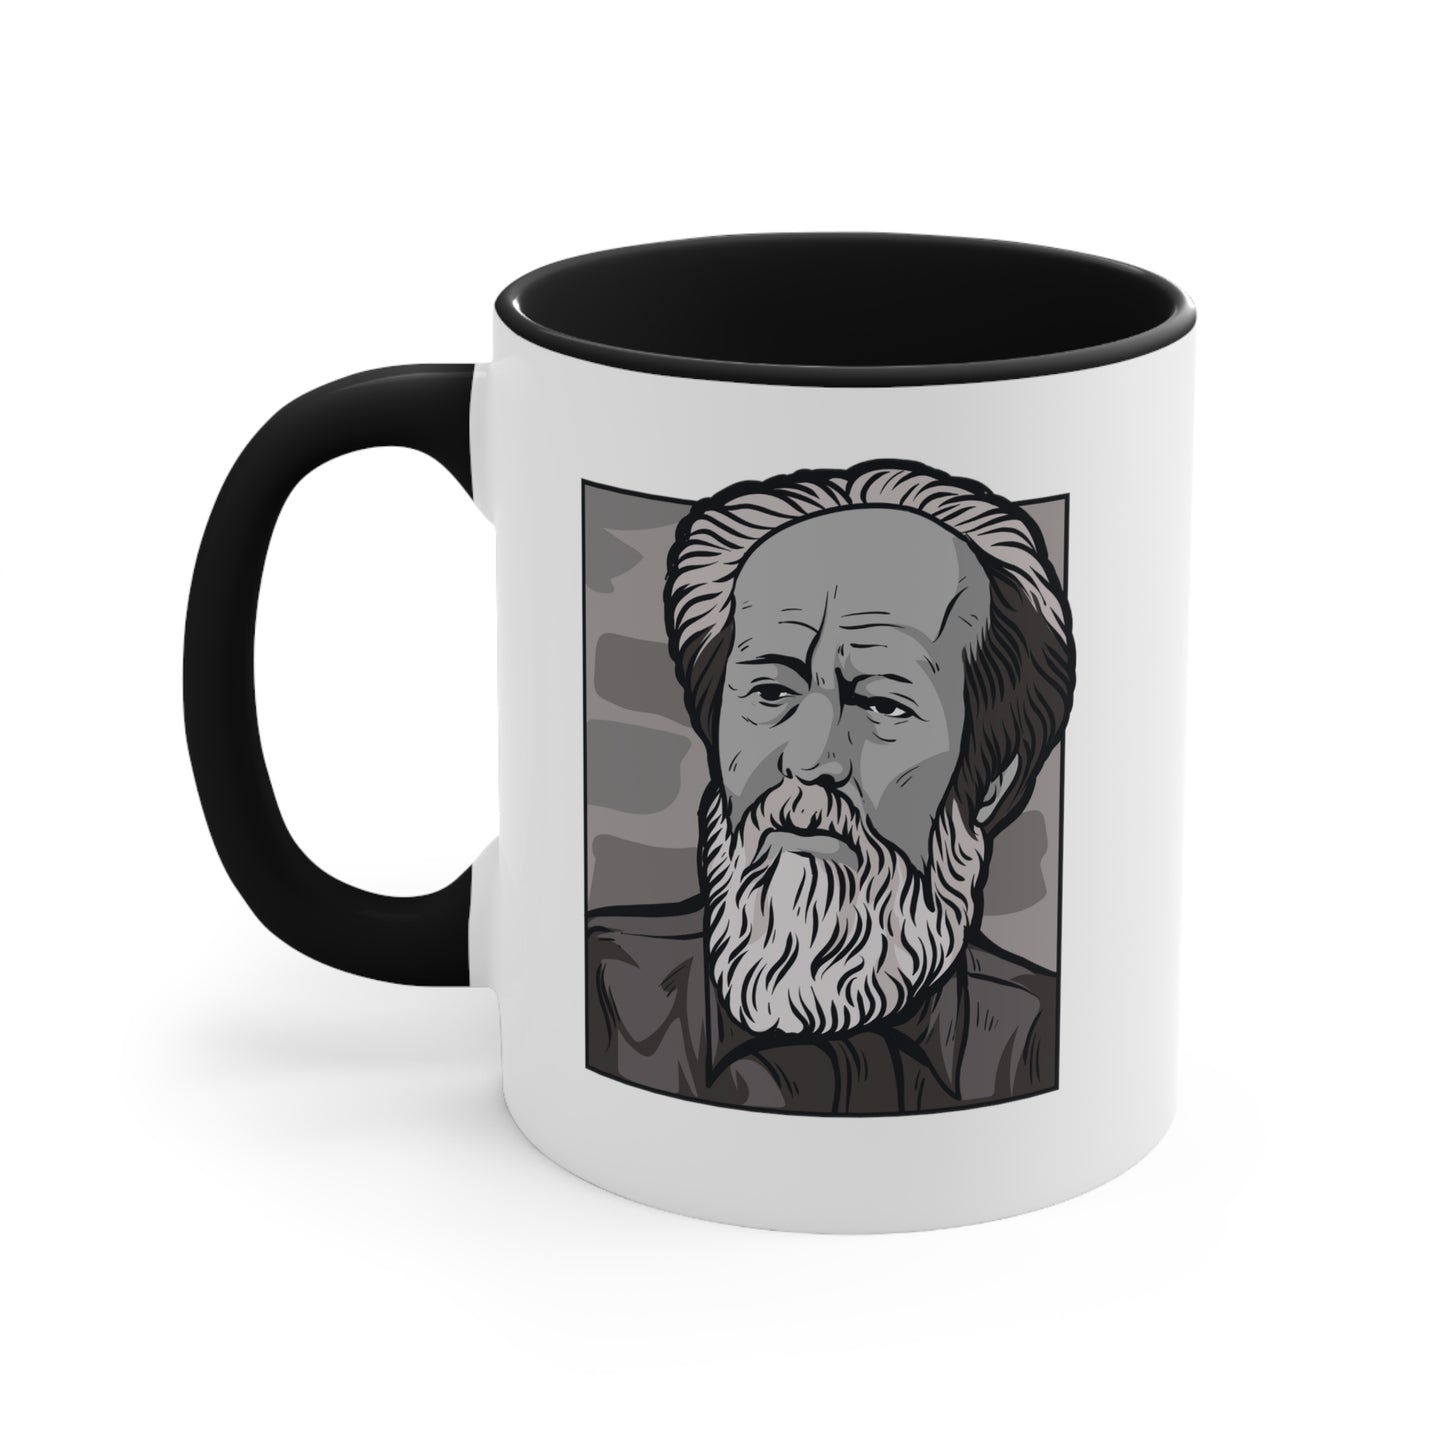 Aleksandr Solzhenitsyn Coffee Mug Black and White